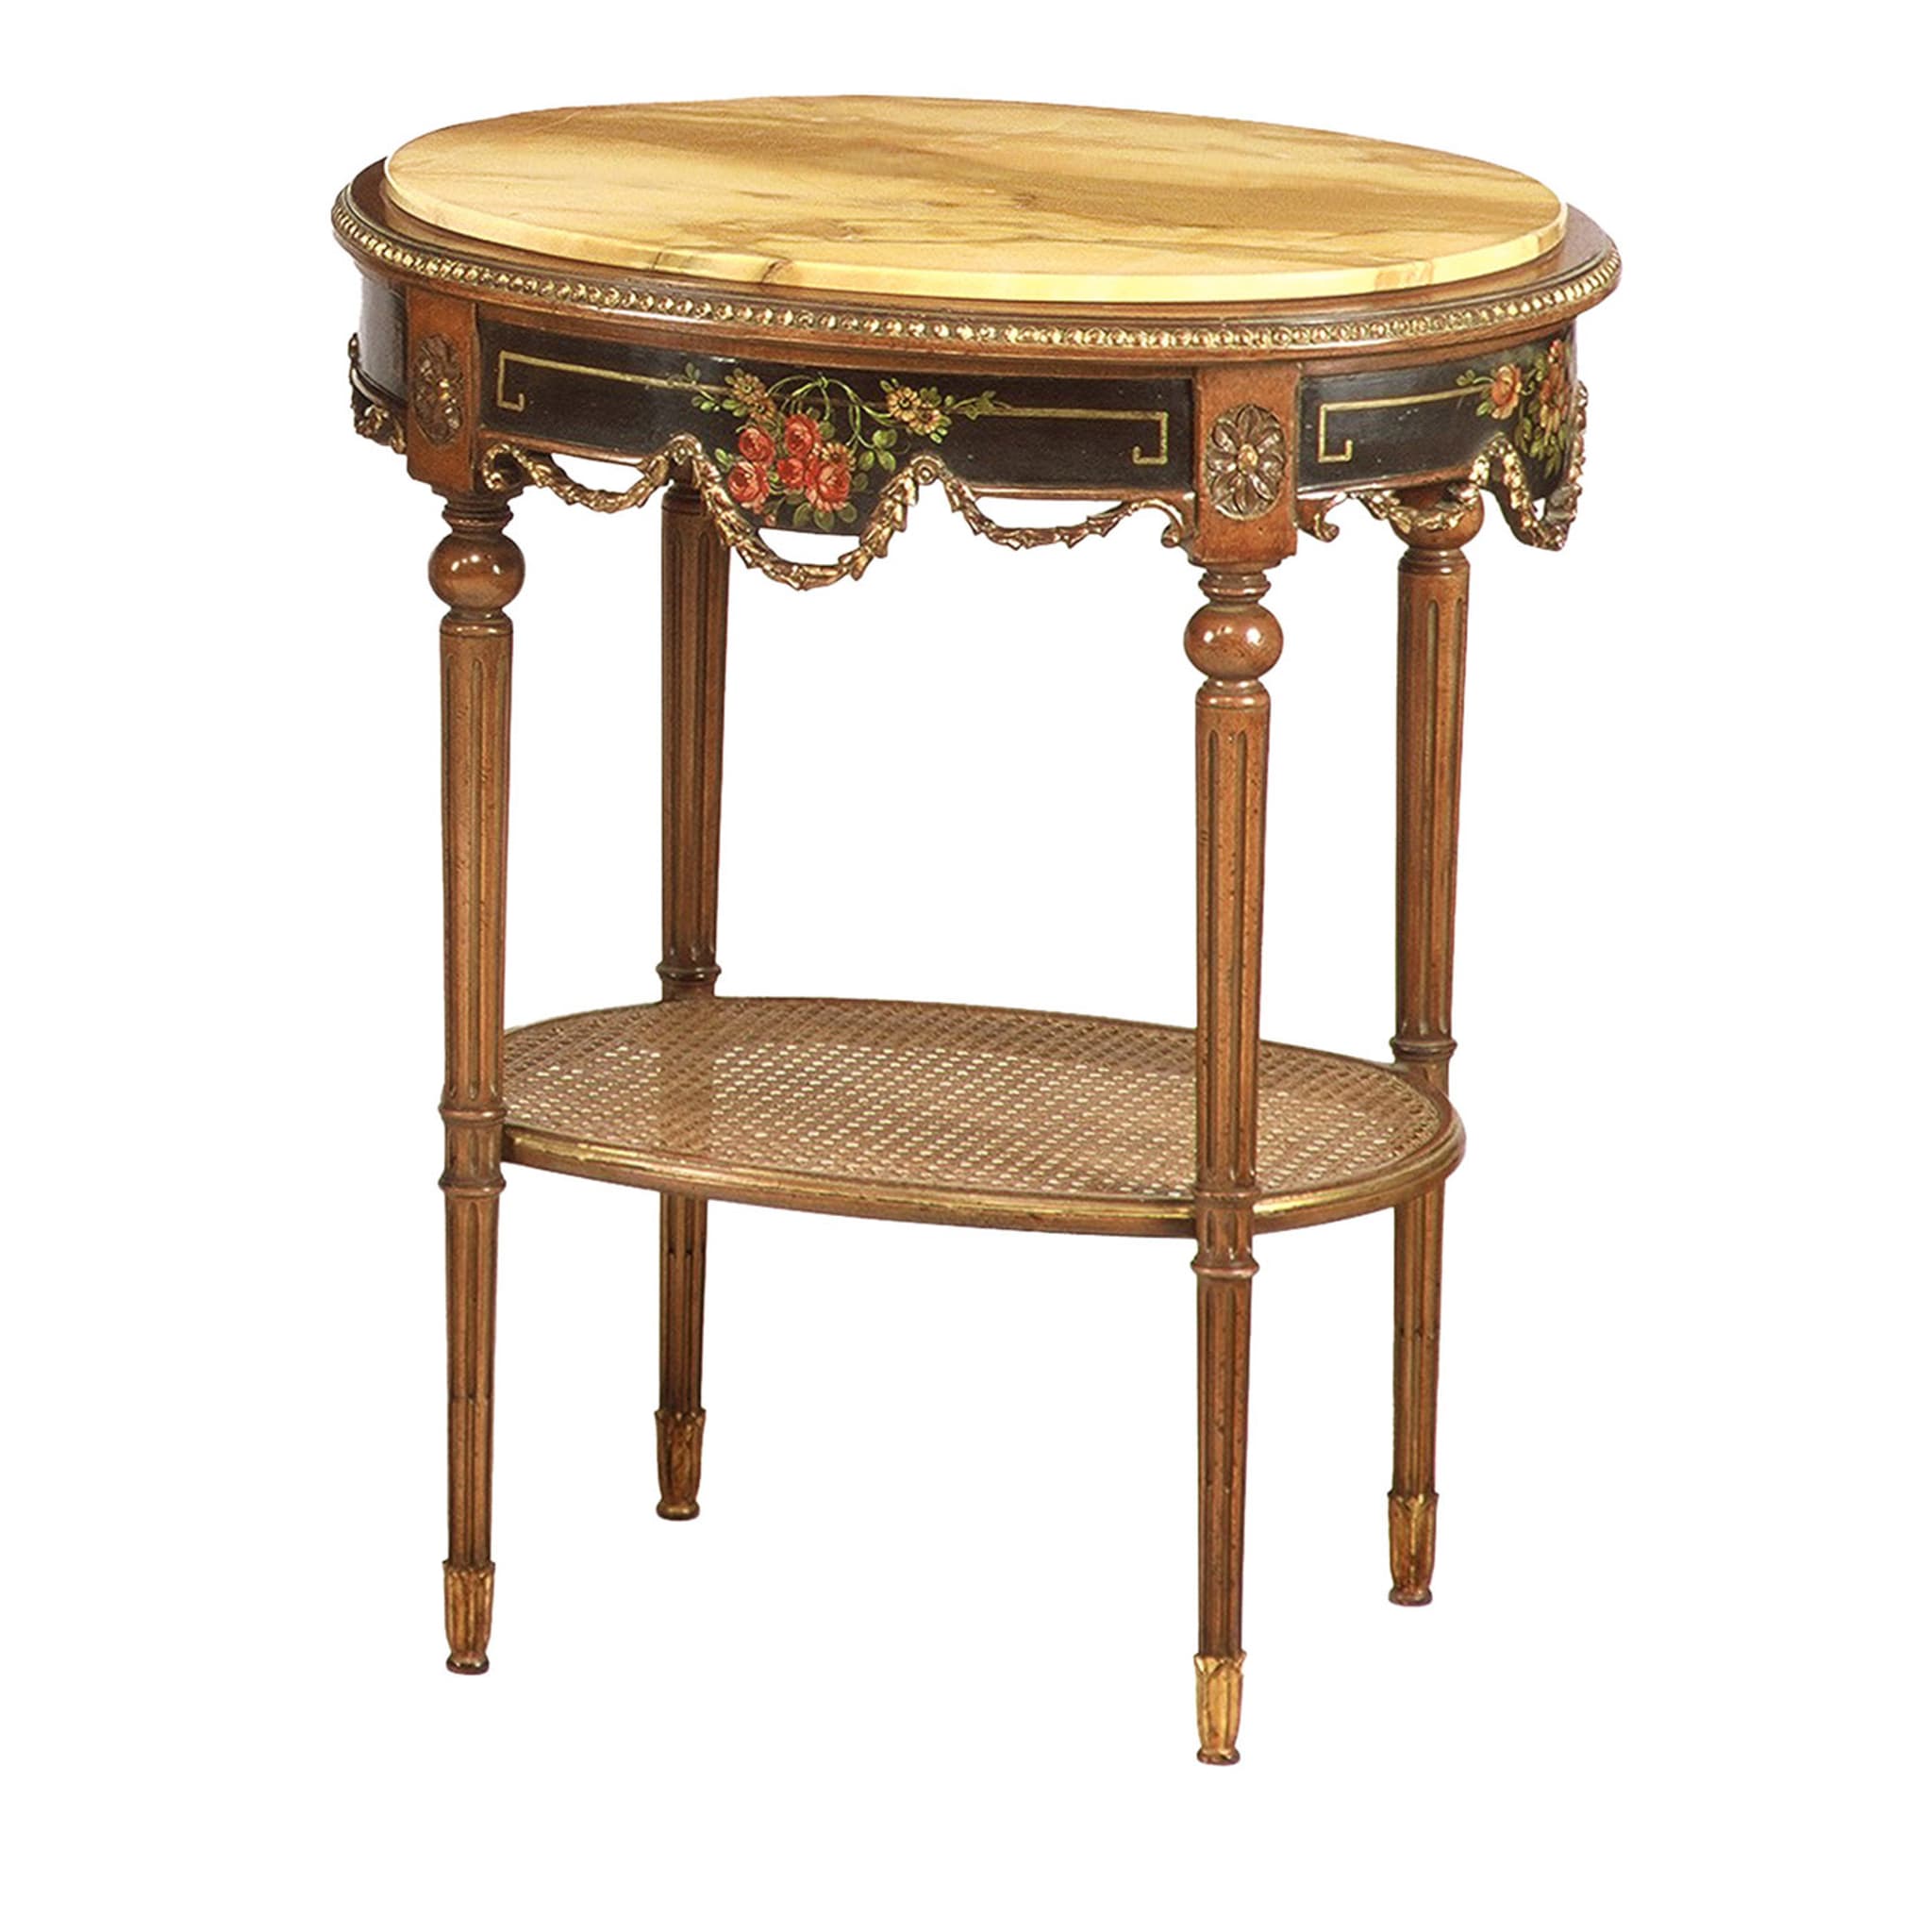 Tavolino ovale in stile noclassico francese #1 - Vista principale